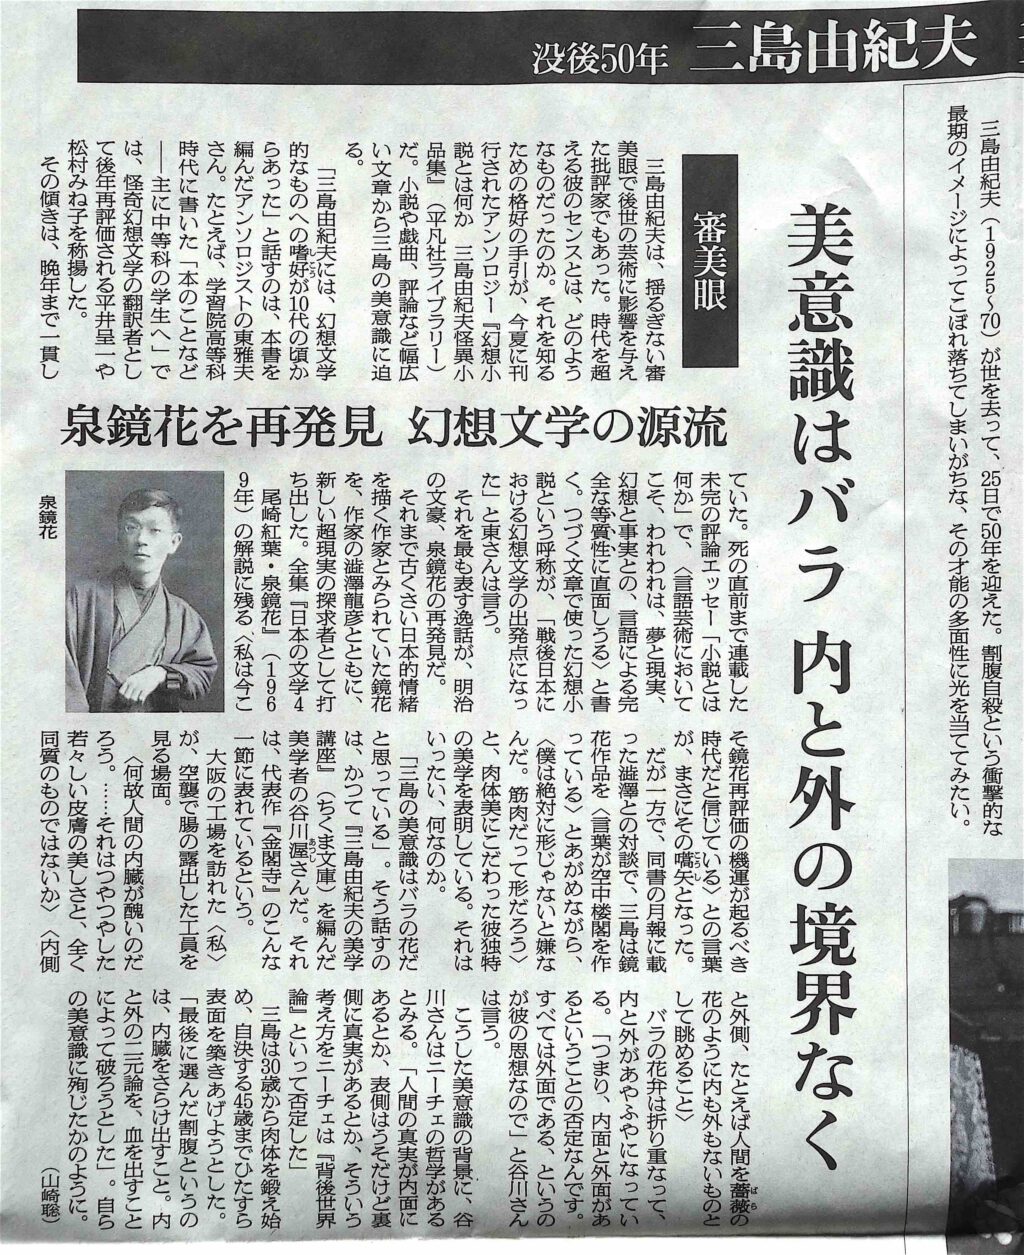 朝日新聞夕刊、2020年11月25日、三島由紀夫の美意識はバラ